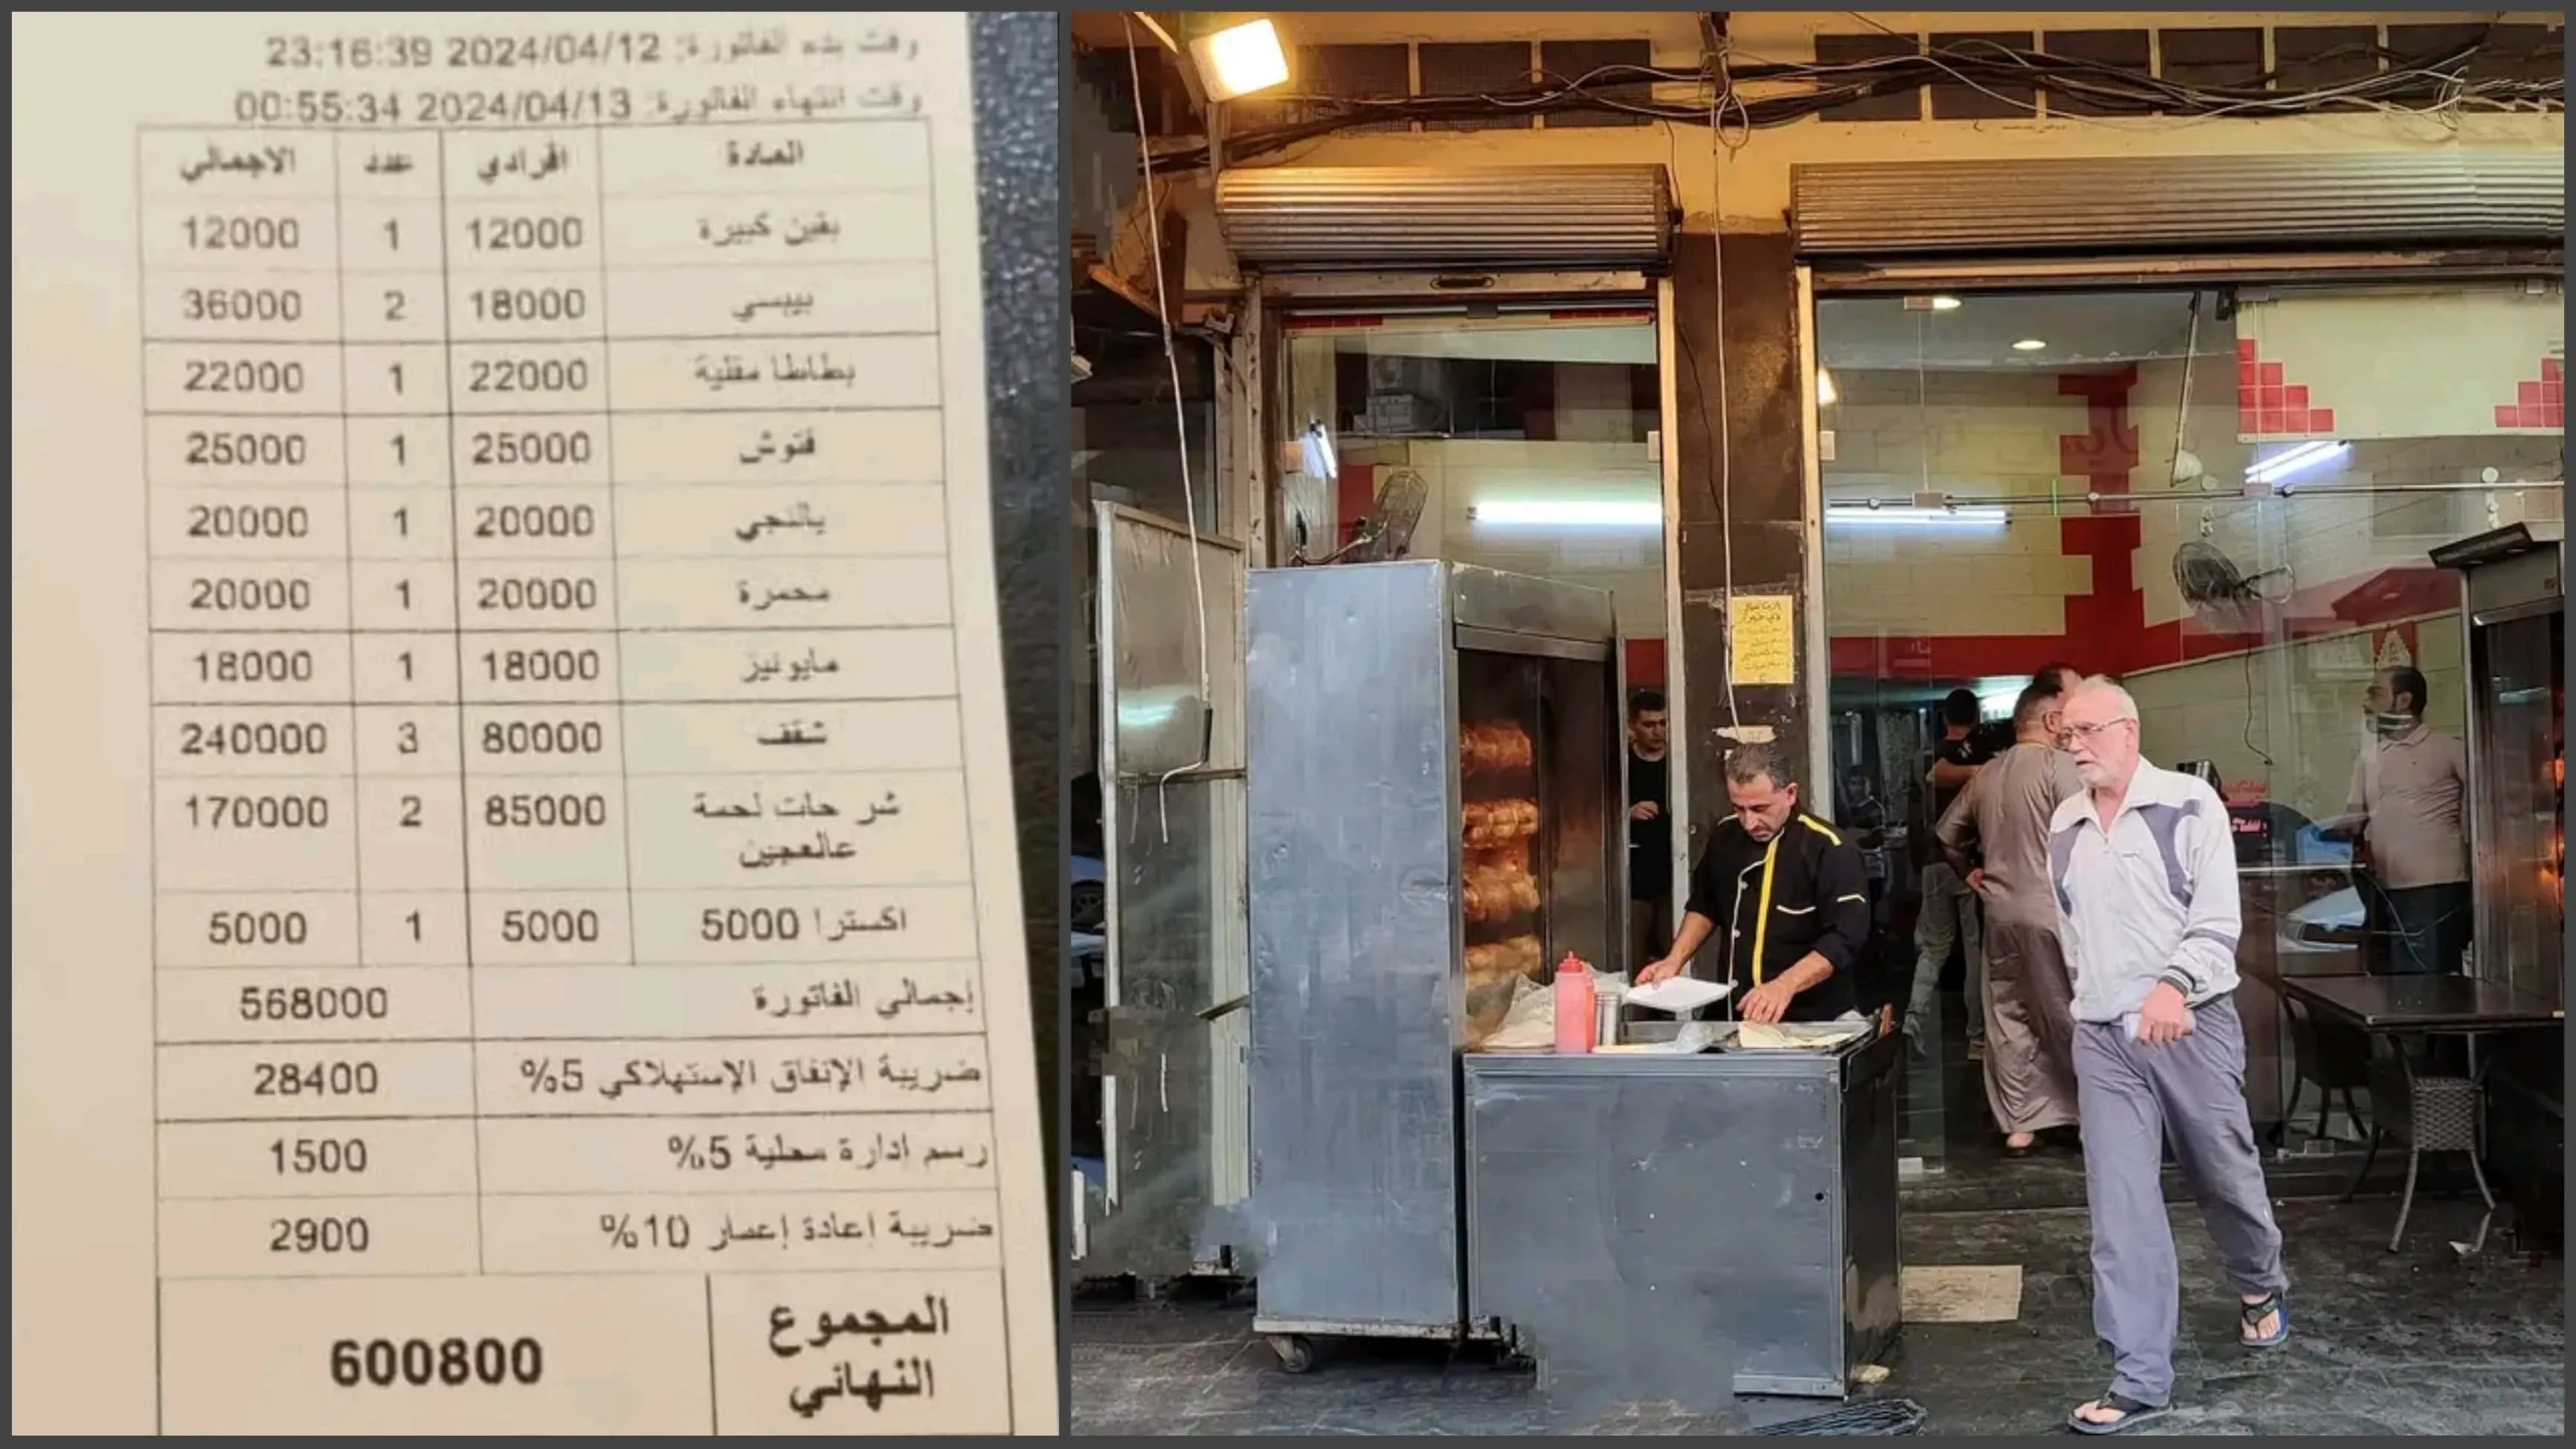 "جمعية مطاعم" لدى النظام ترفع تسعيرة المأكولات الشعبية والمقاهي بنسبة 30 بالمئة